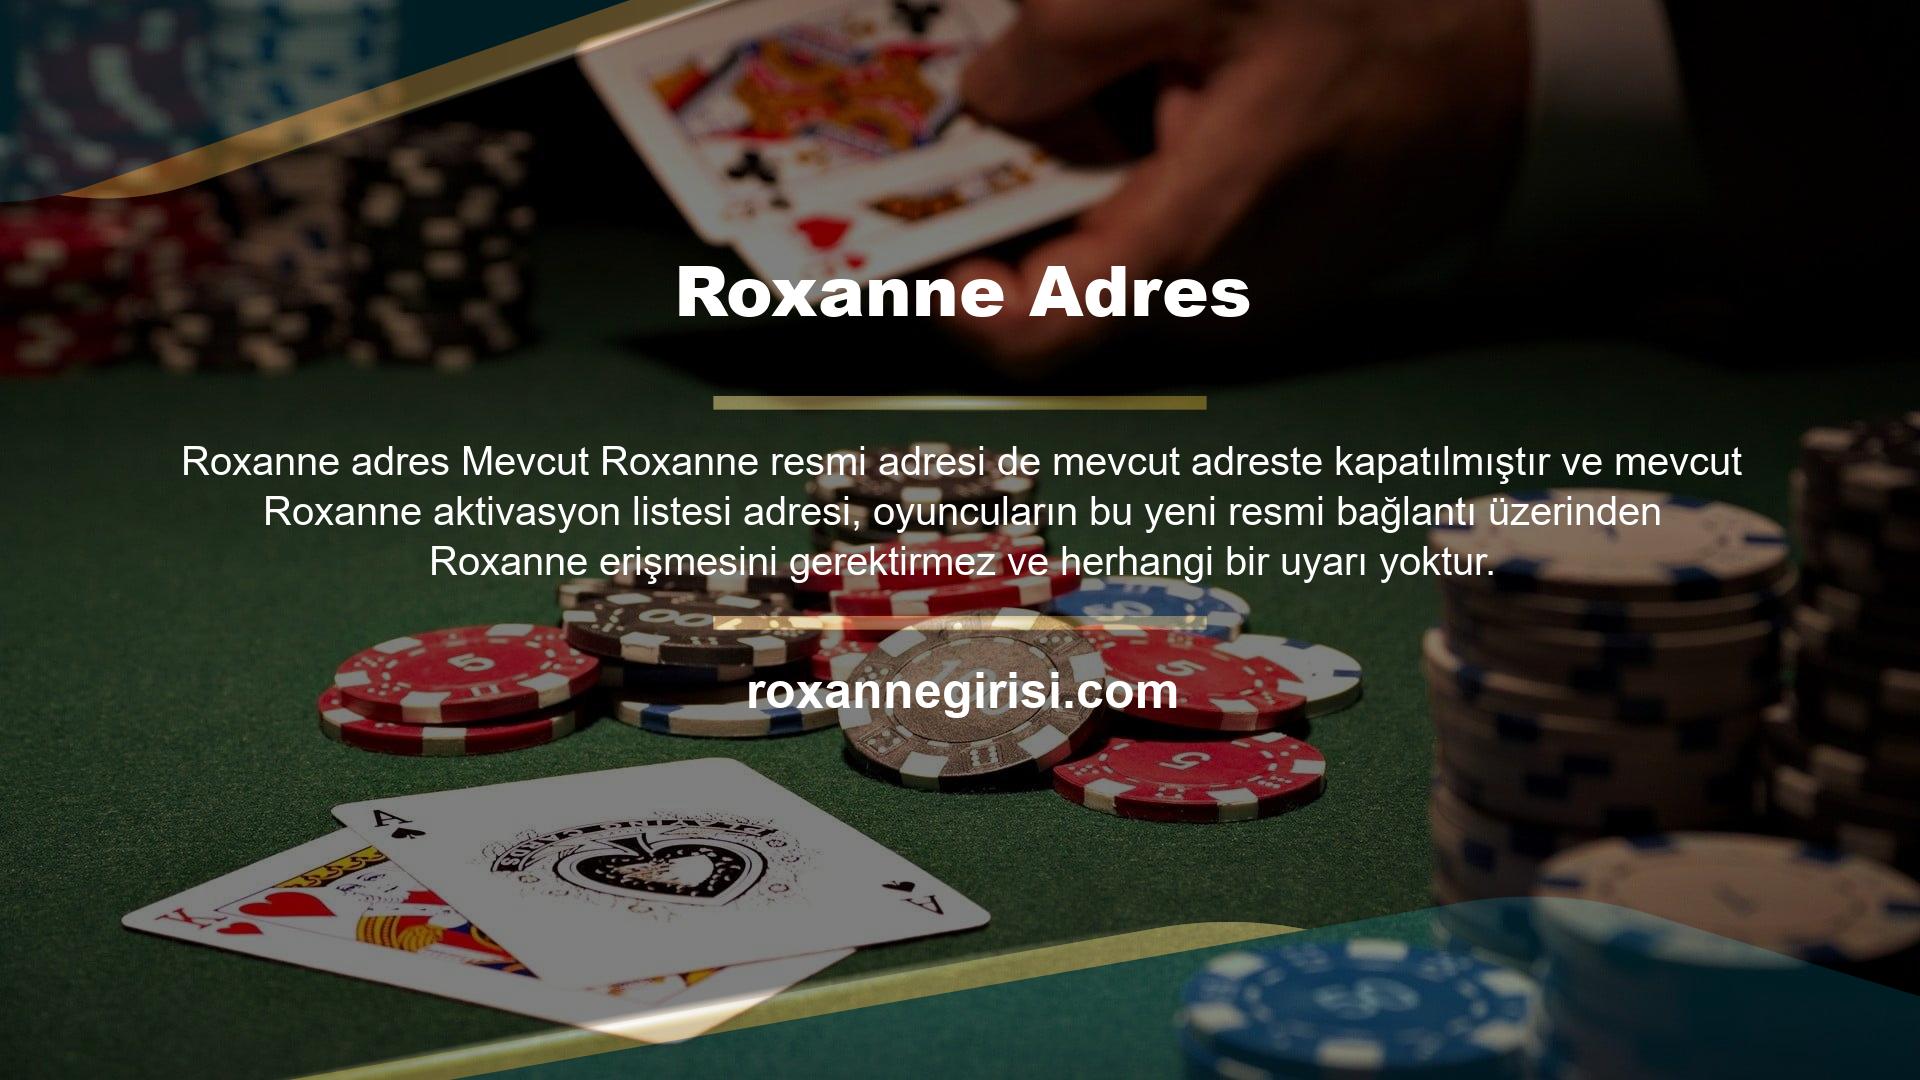 Roxanne, oyuncularla paylaşılan güvenilir bir bahis sitesidir ve para çekme ve yatırımı umursamayan birkaç siteden biridir